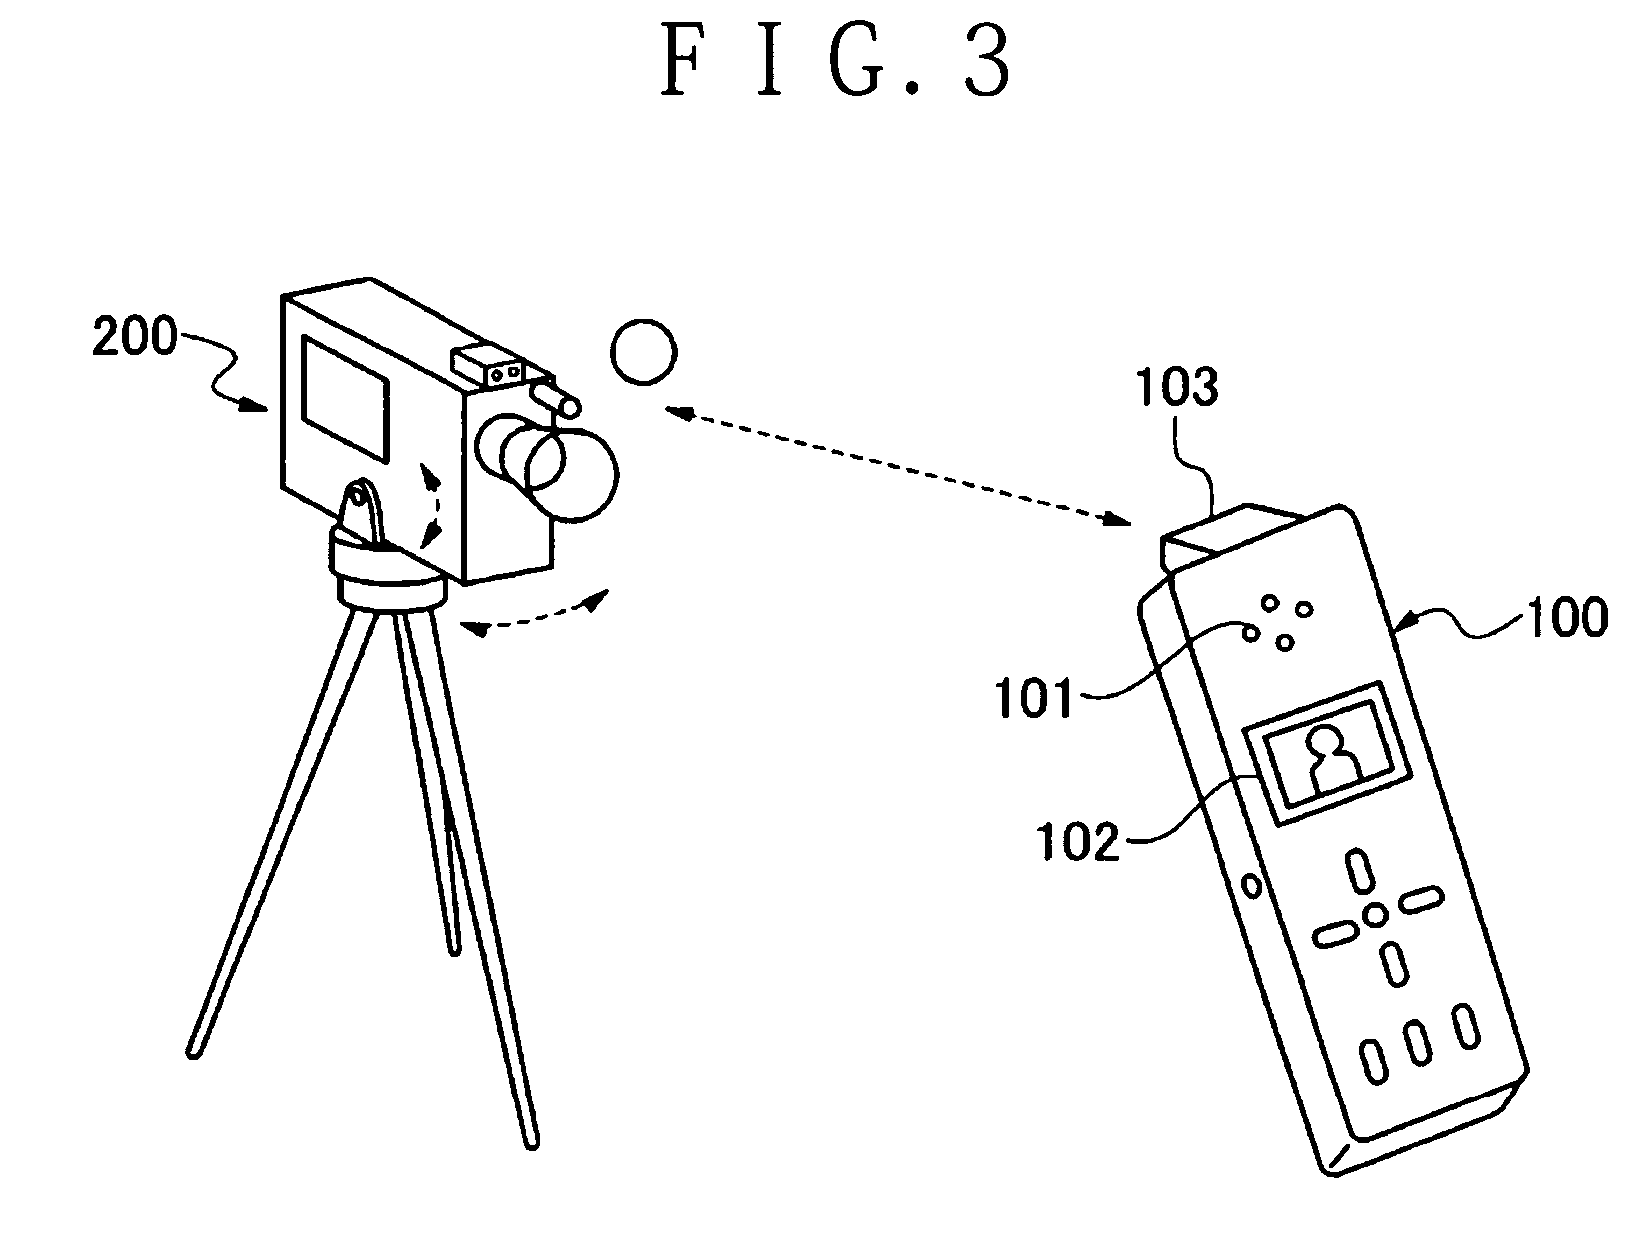 Video camera apparatus